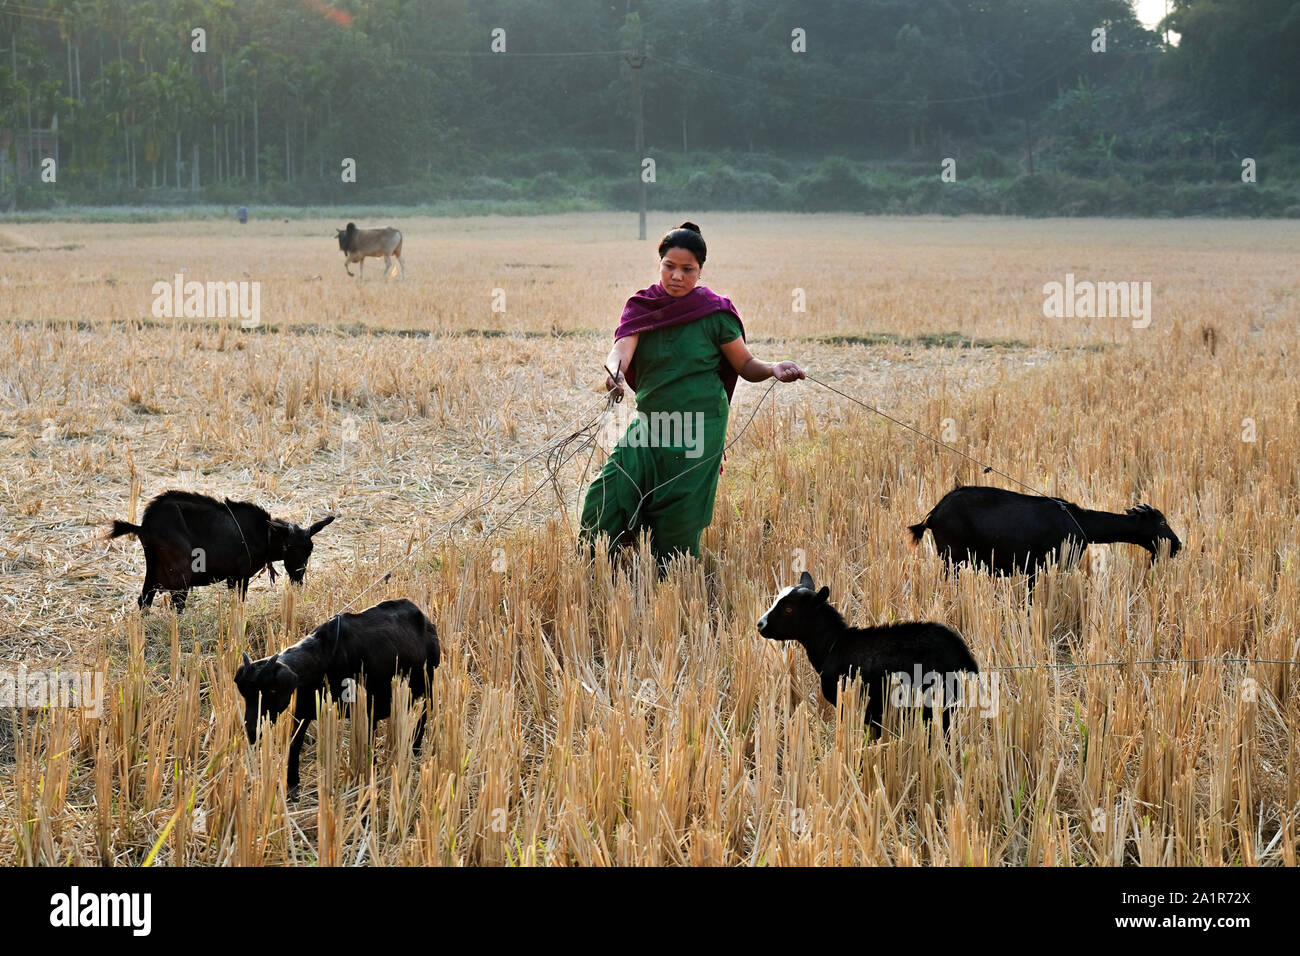 Frau ihre Ziegen auf einem abgeernteten Reisfeld im Dorf Borakathal, Manipur State, im Nordosten Indiens Stockfoto